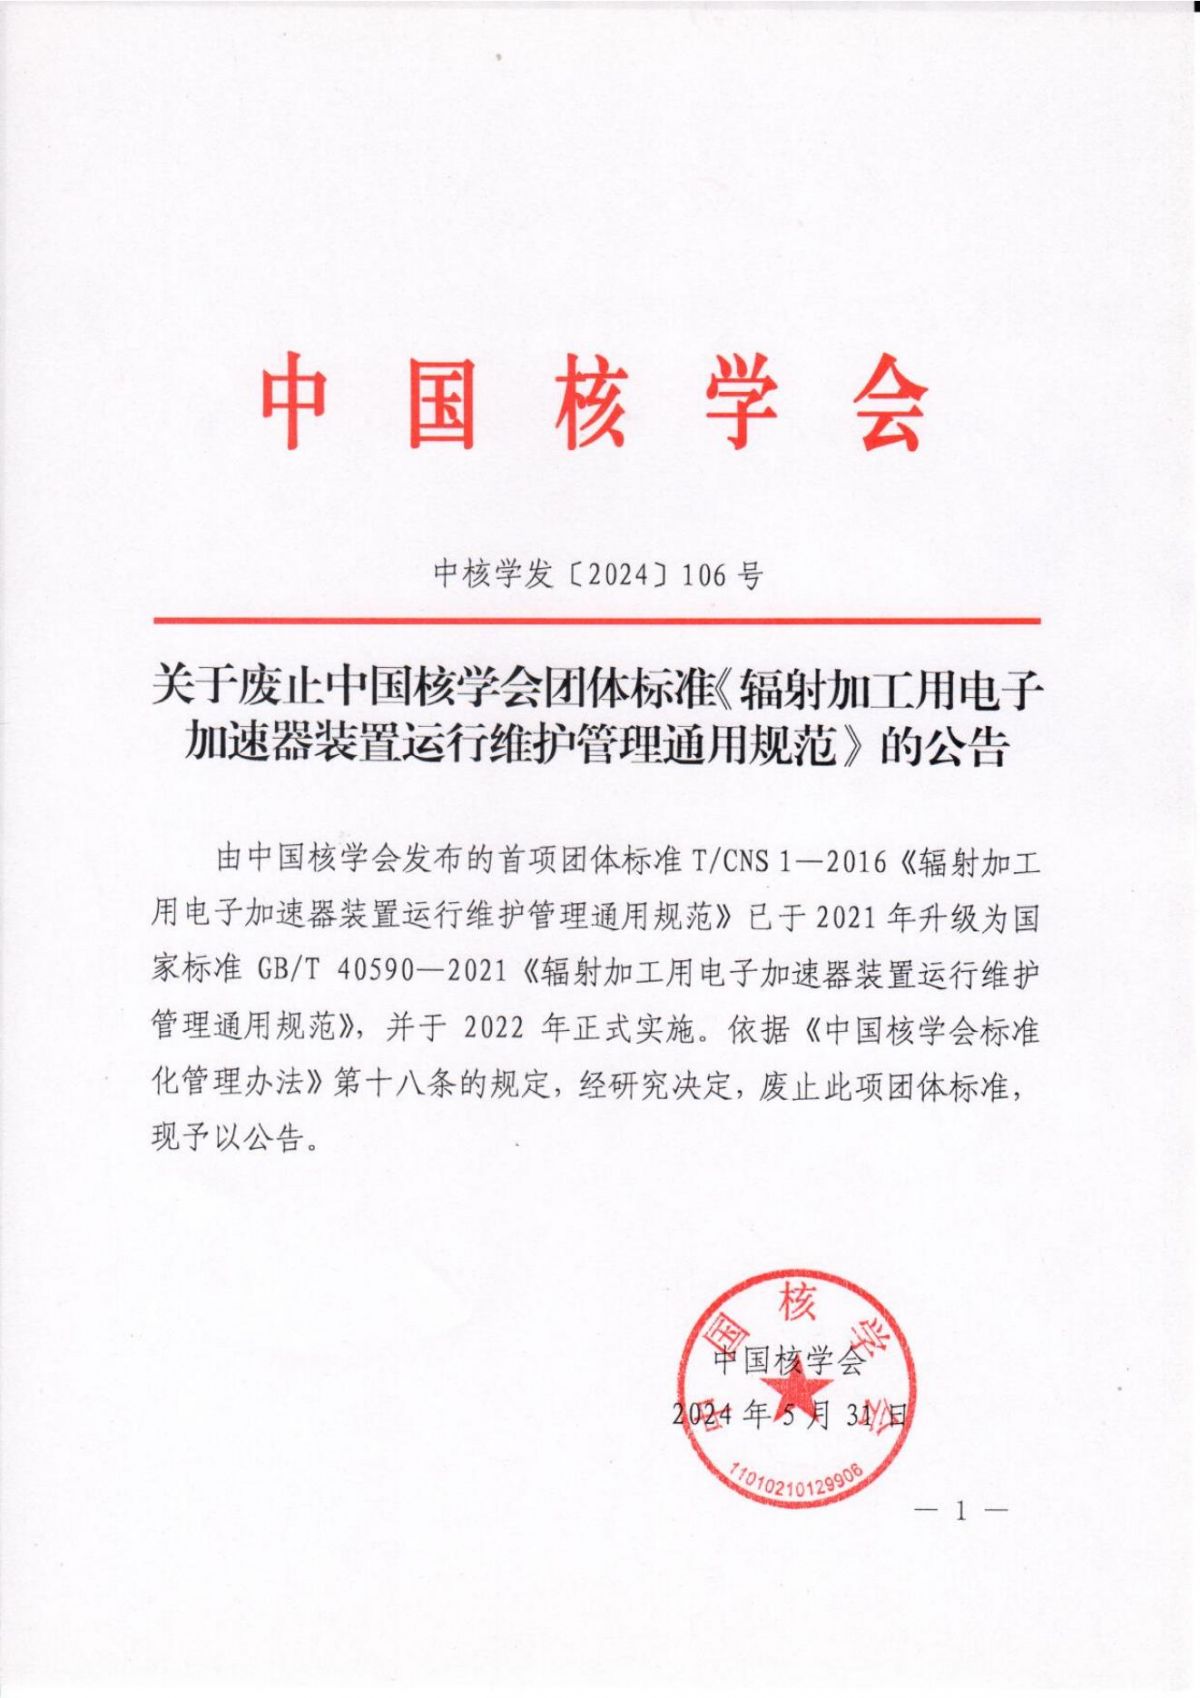 关于废止中国核学会团体标准《辐射加工用电子加速器装置运行维护管理通用规范》的公告_00.jpg